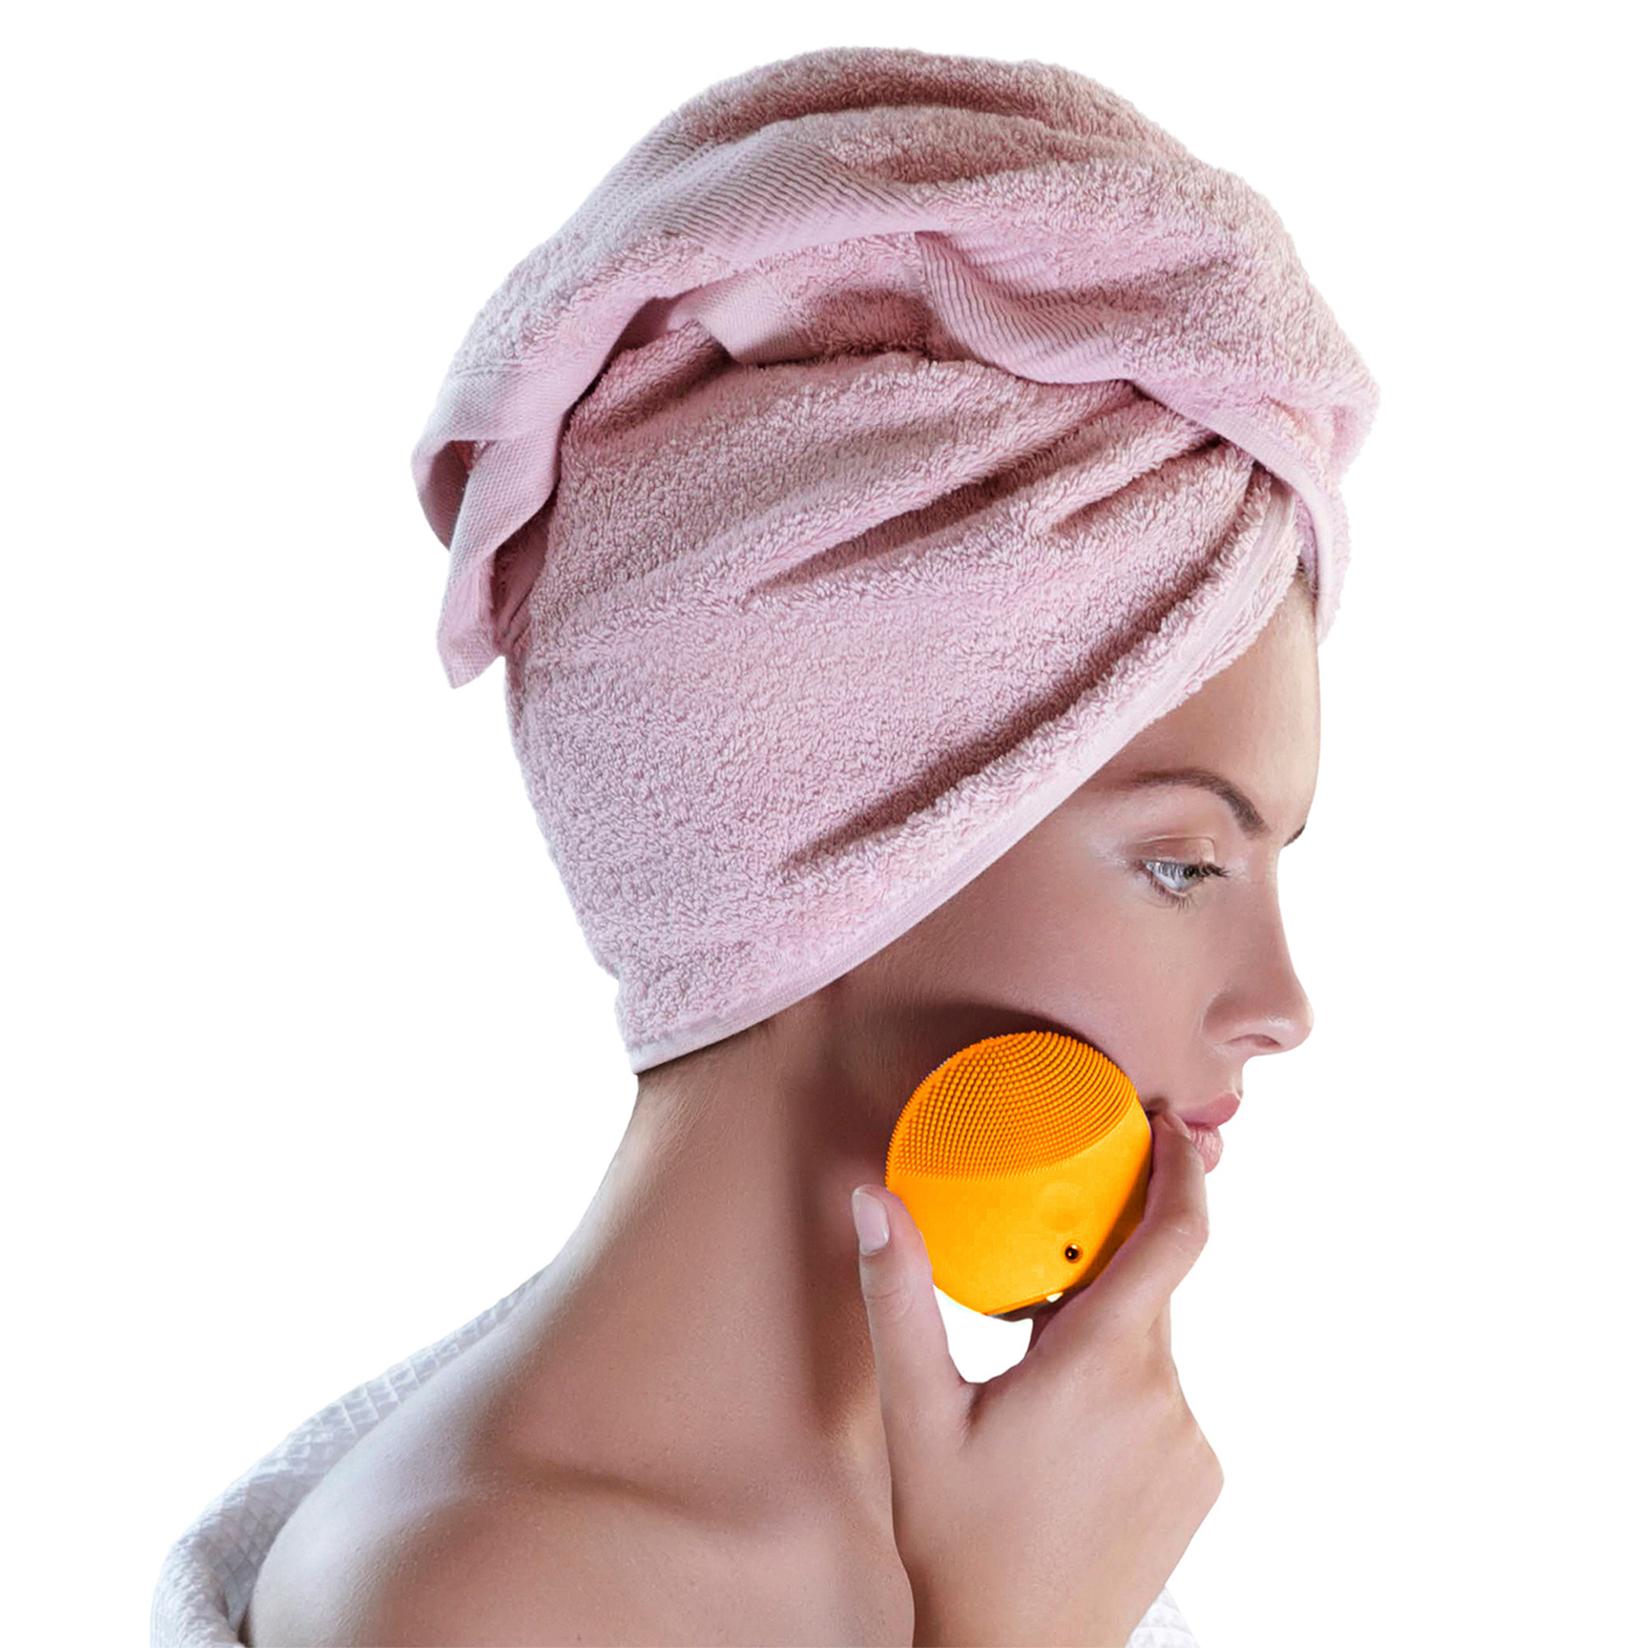 Selected image for FOREO Pametni sonični uređaj za čišćenje lica LUNA mini 3 Sunflower Yellow